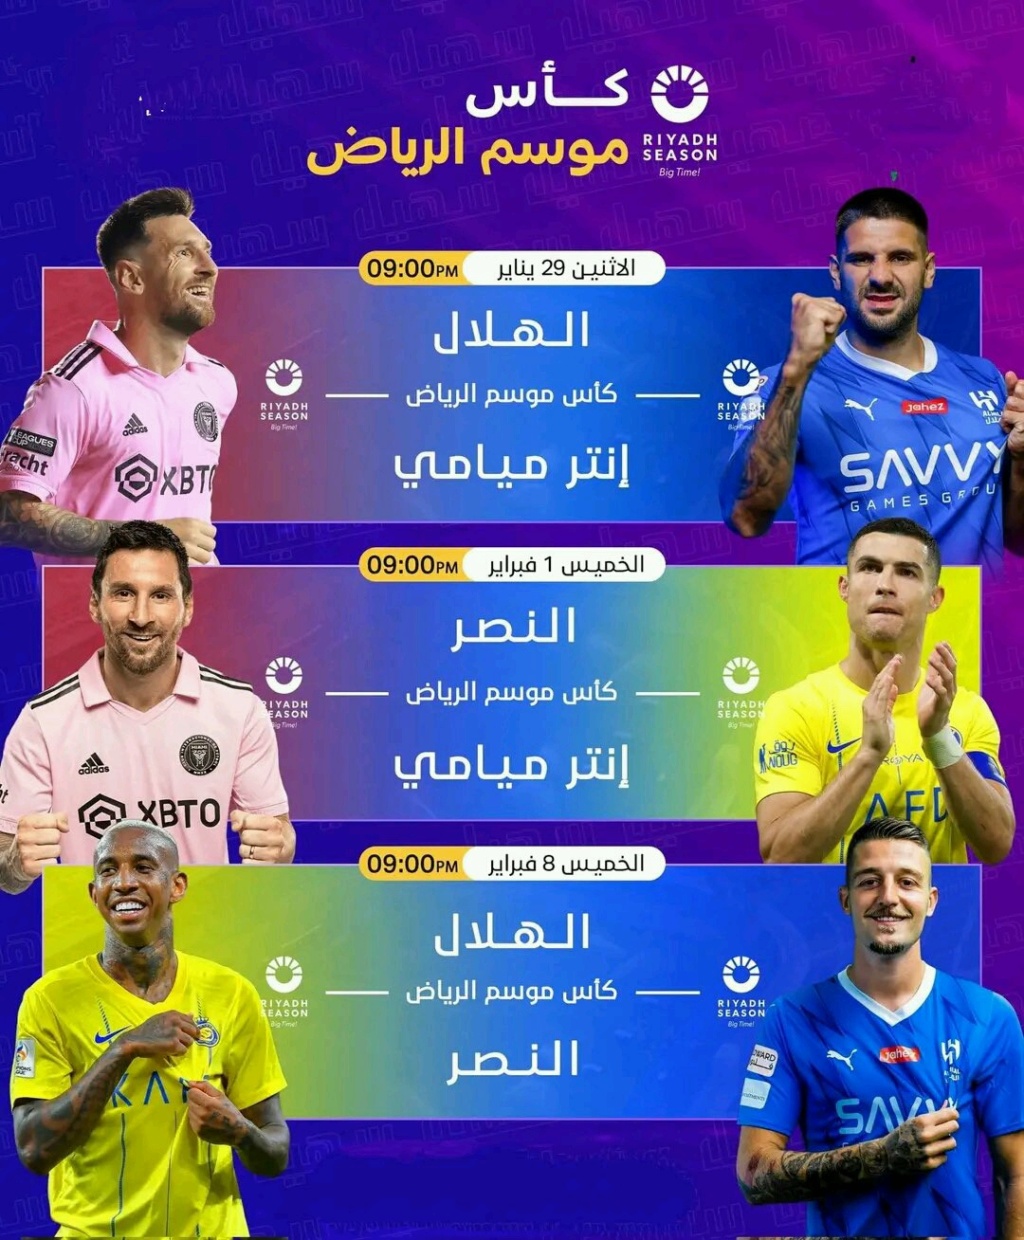 كأس الموسم في الرياض Ge13cy10